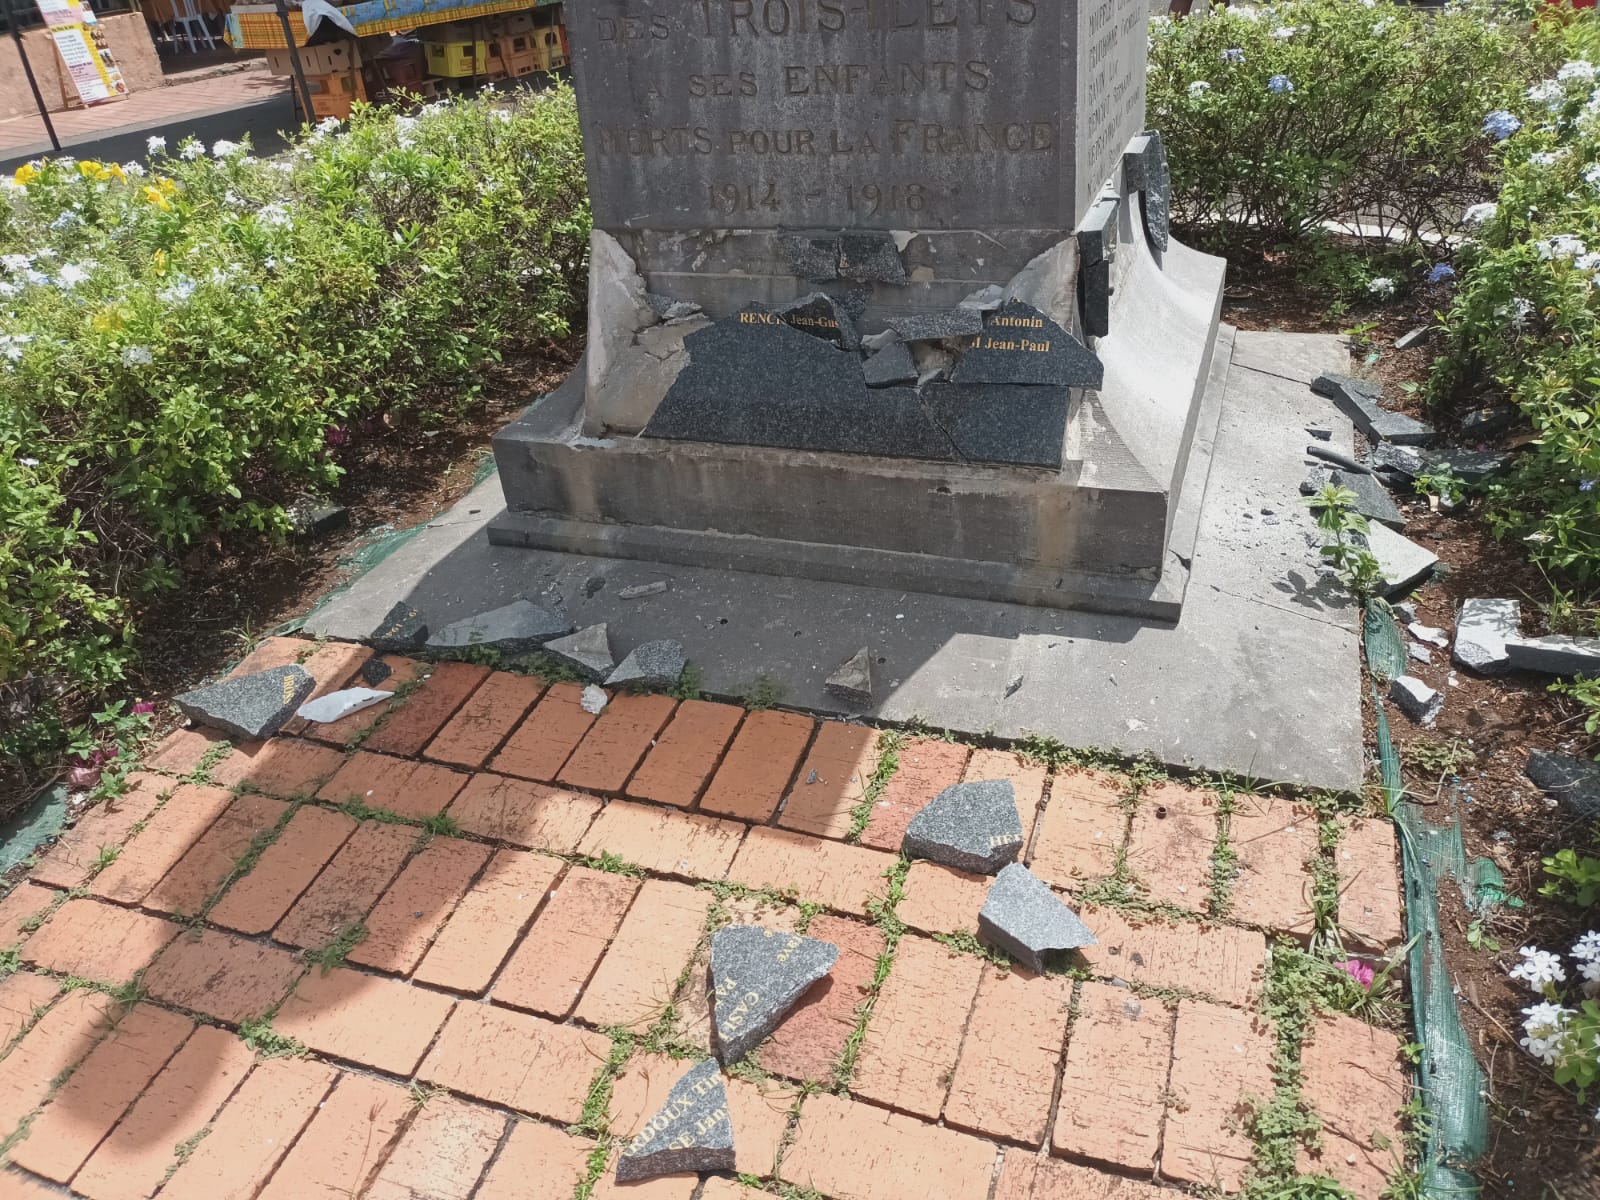     Le monument aux Morts des Trois-Îlets a lui aussi été vandalisé

